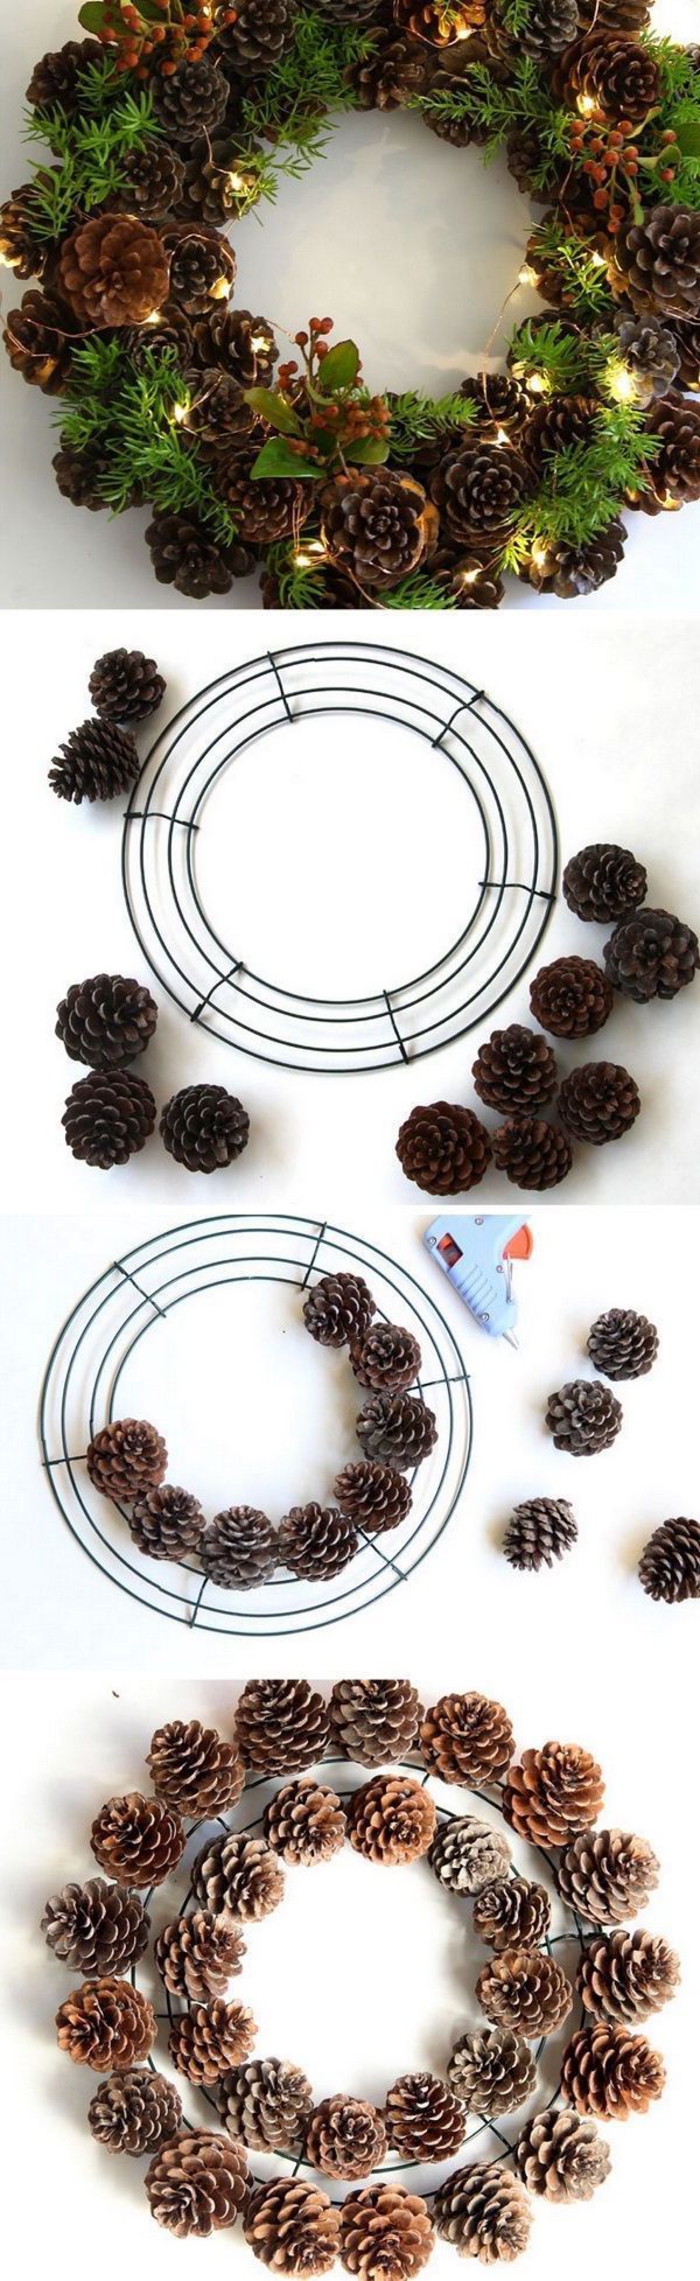 une jolie couronne de noël naturelle réalisée avec un cercle métallique décoré de pommes de pin et branches de verdure, deco noel a faire soi meme